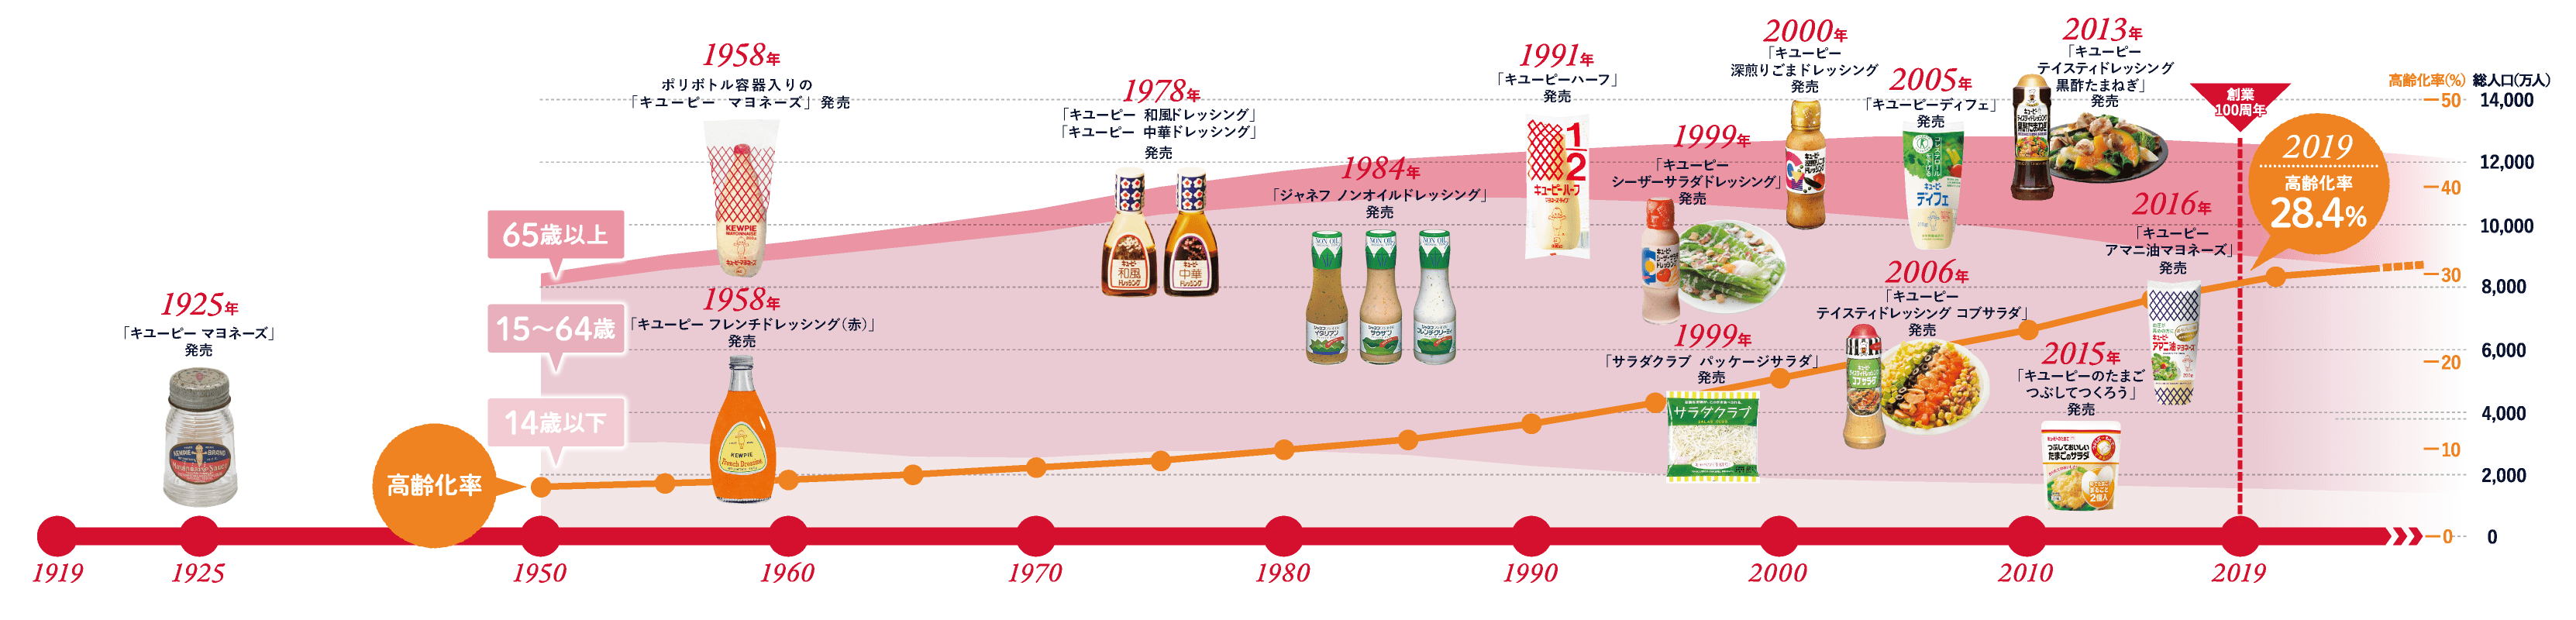 1925年：「キユーピー マヨネーズ」発売 2019年：創業100周年、高齢化率28.4%